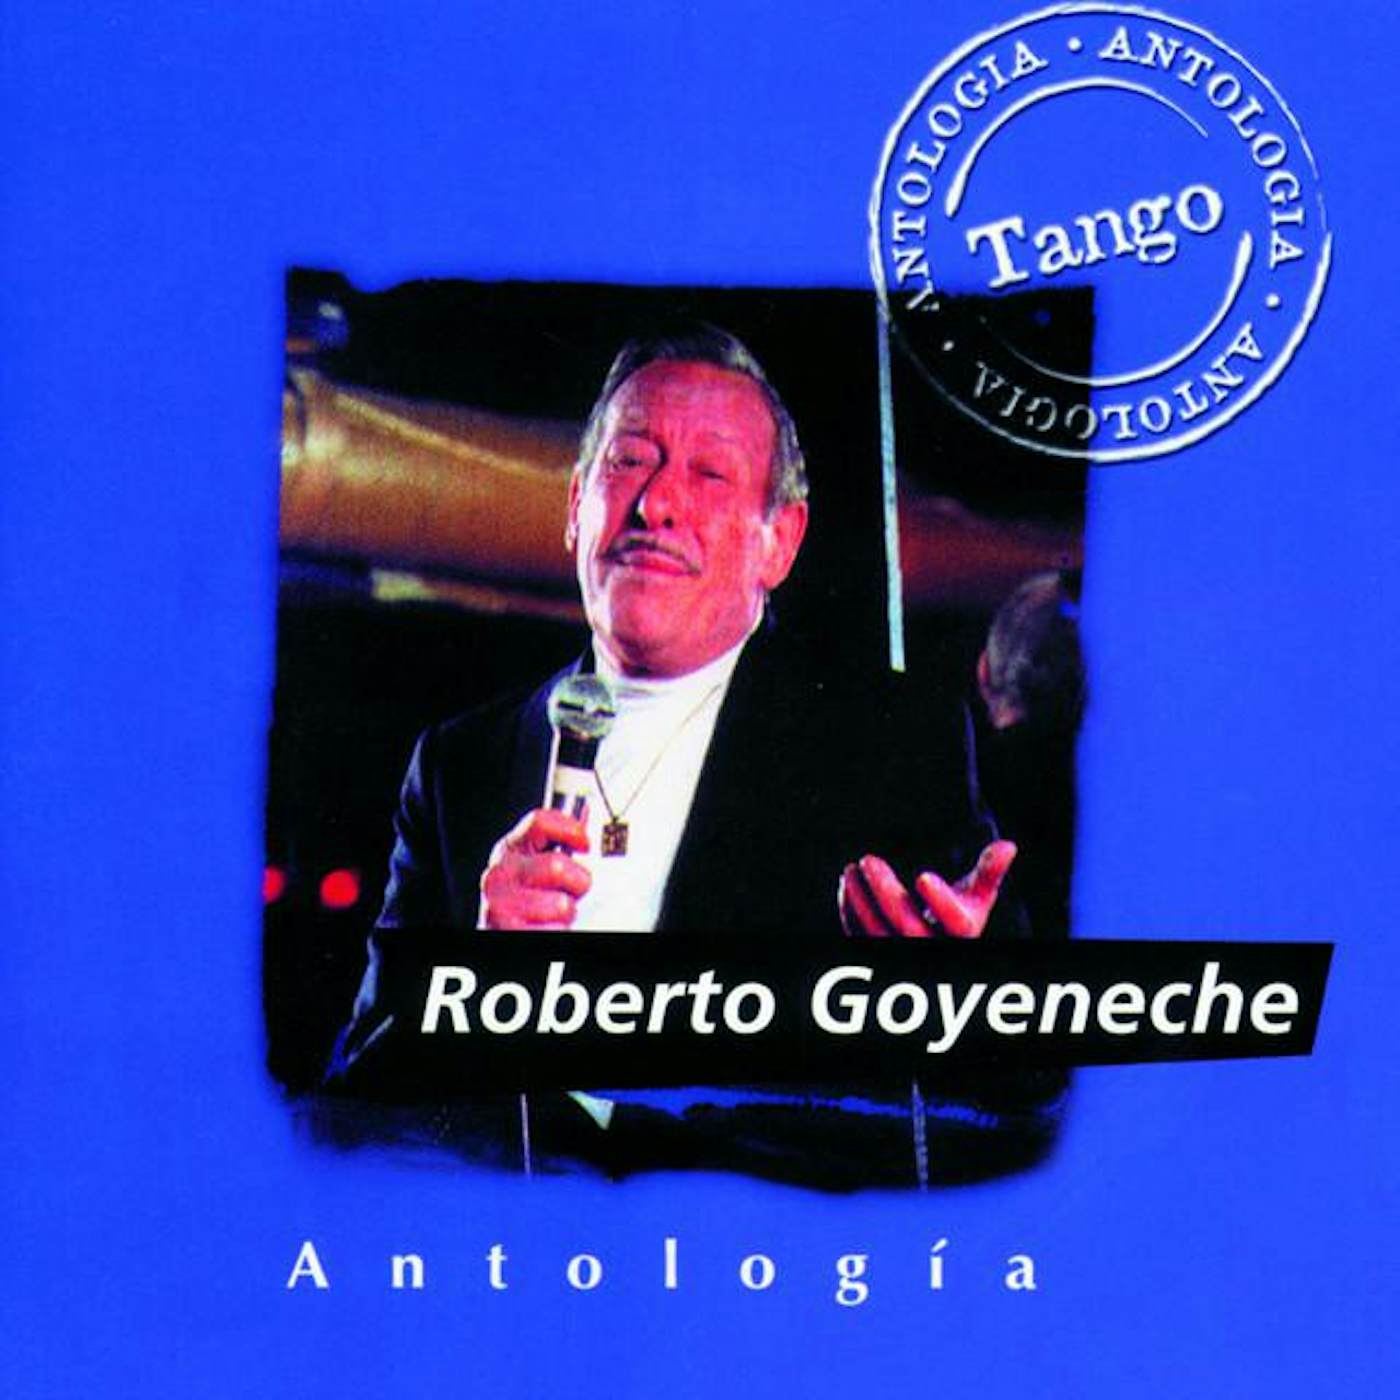 Roberto Goyeneche